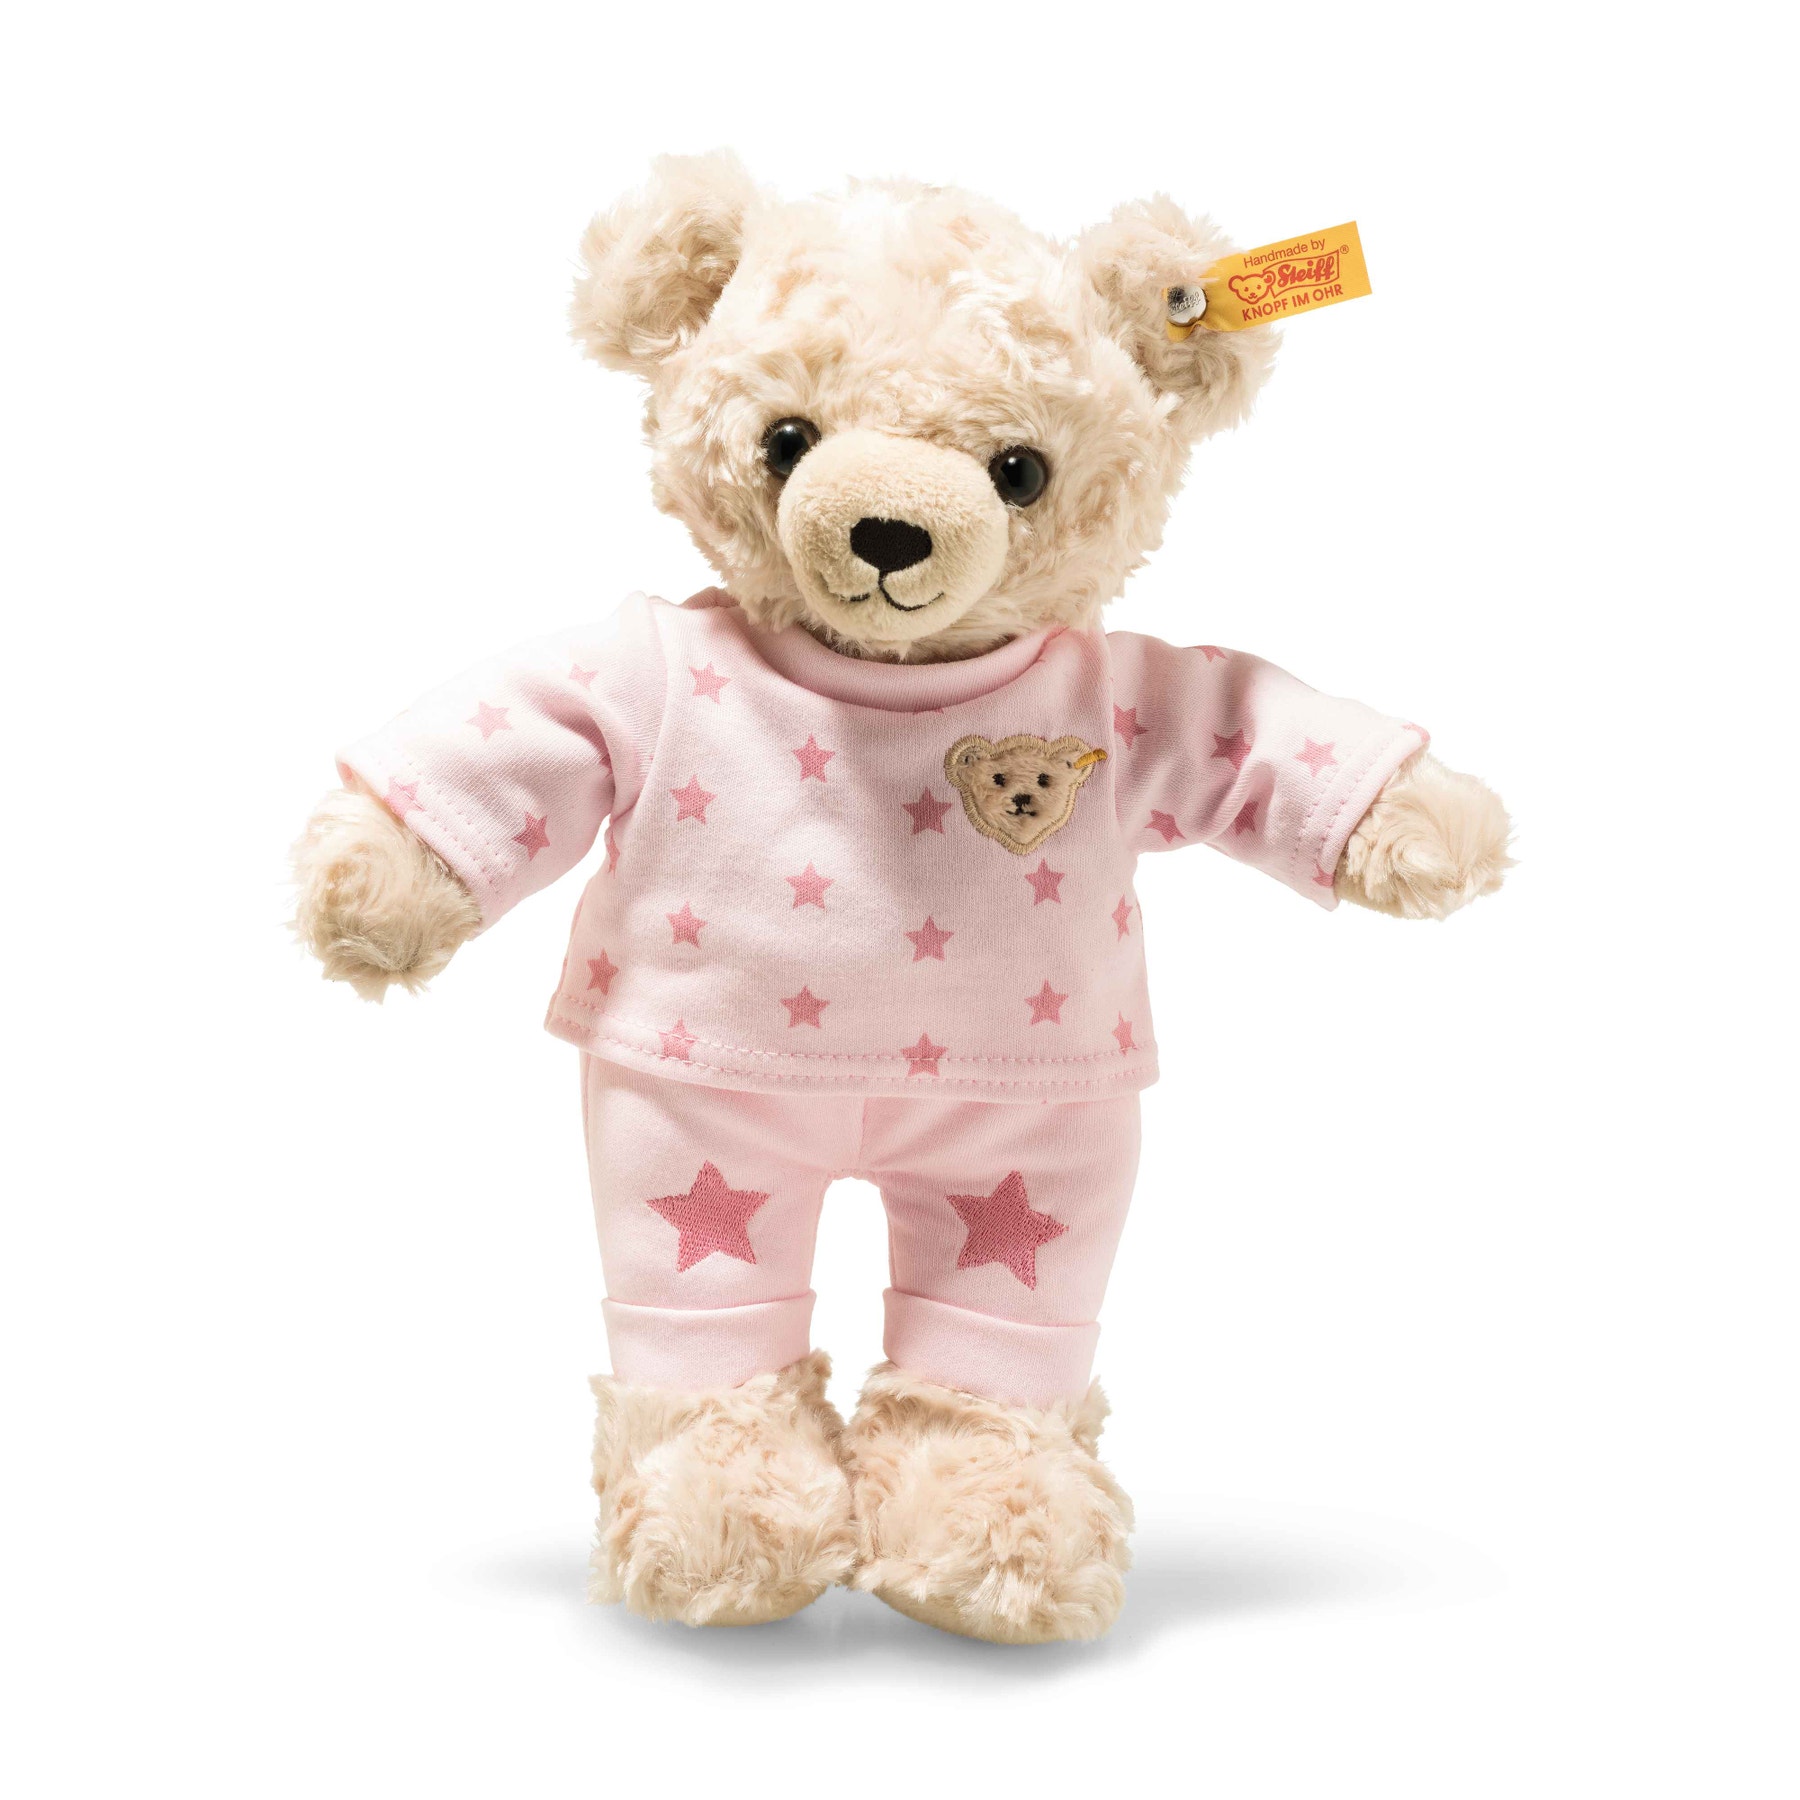 Teddy and Me Teddy bear girl with pyjama